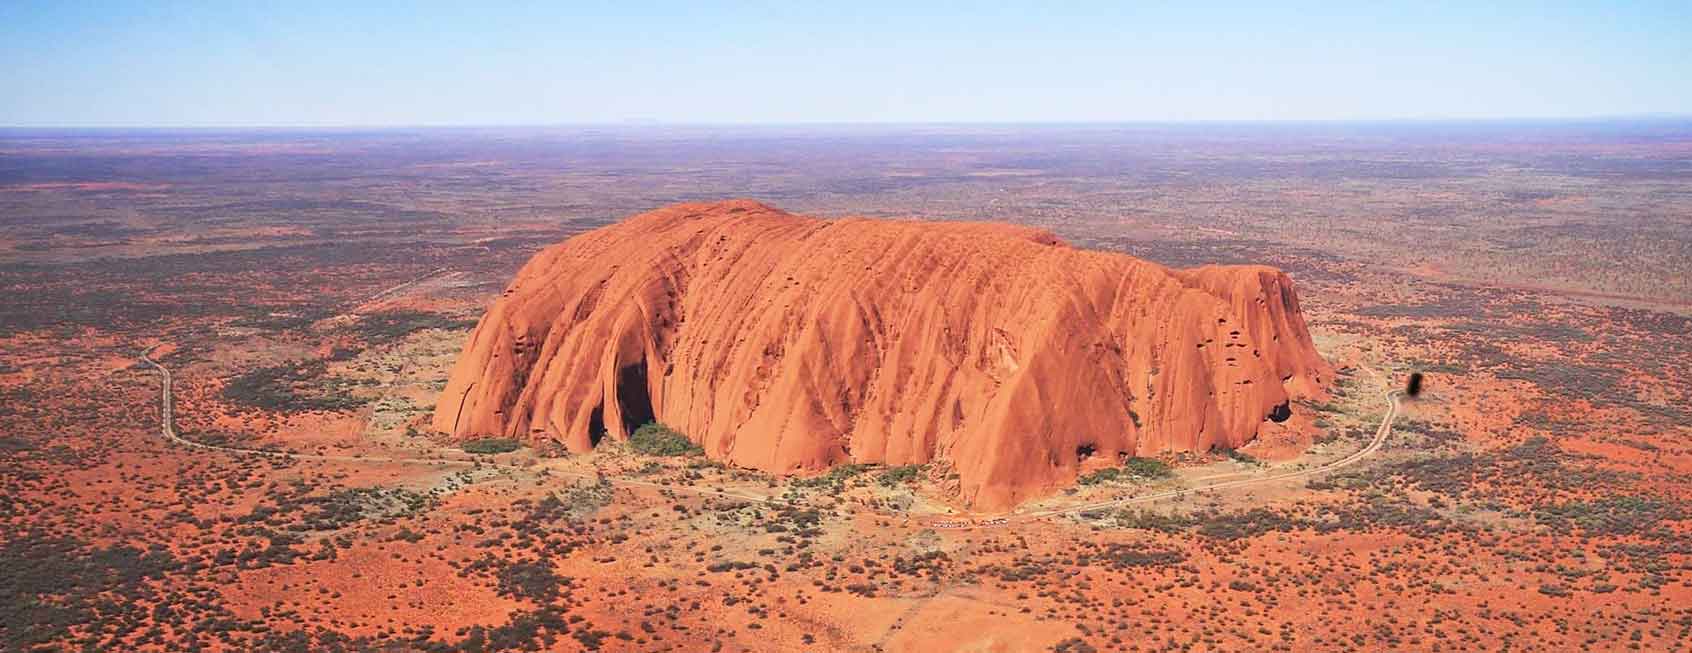 australia outback uluru ayers rock.jpg